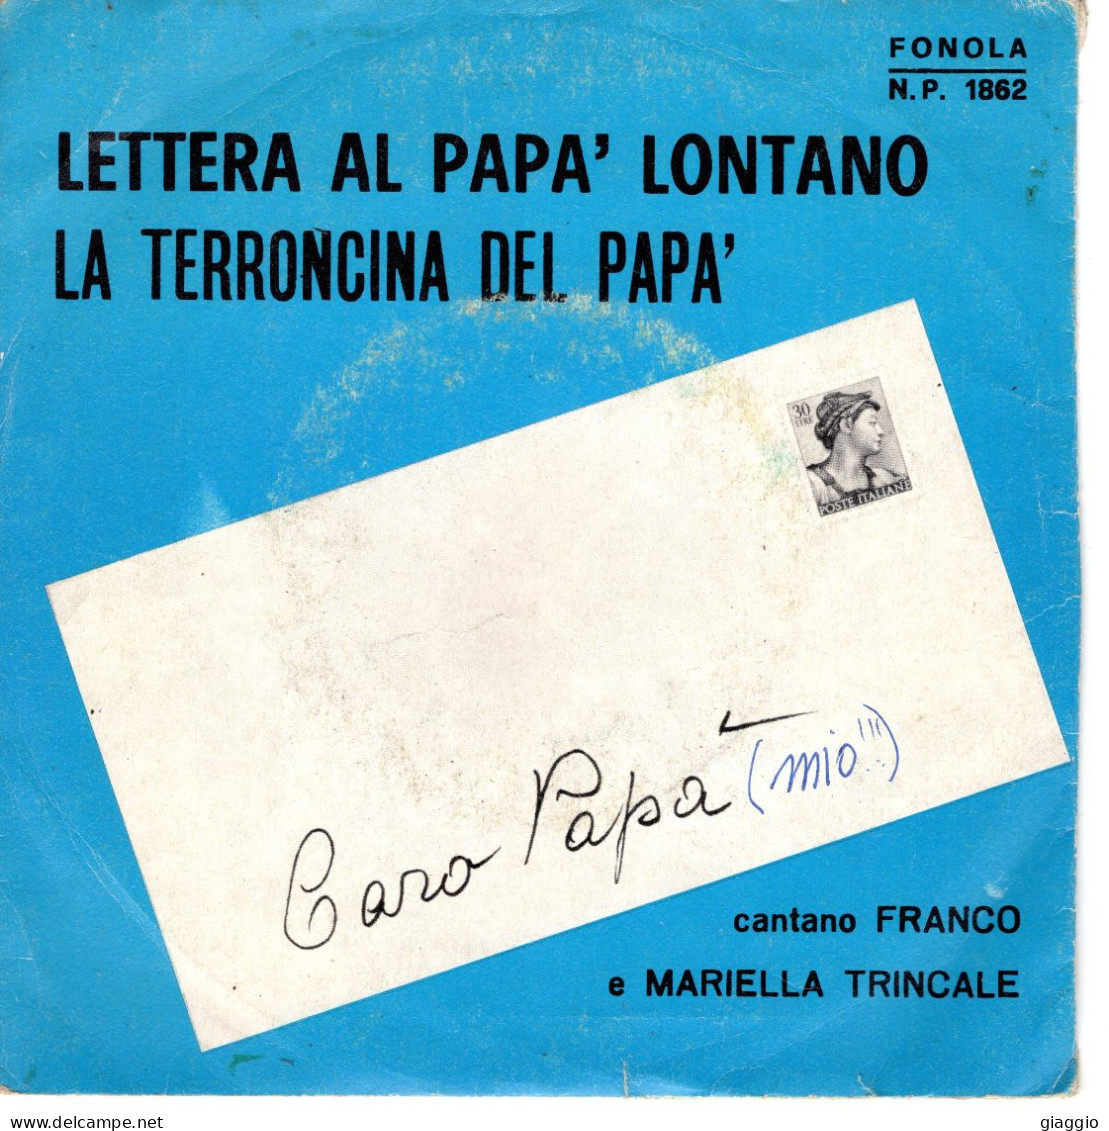 °°° 556) 45 GIRI - MARIELLA TRINCALE E ANTOMAR - LETTERA  AL PAPA LONTANO / LA TERRONCINA DEL PAPA °°° - Other - Italian Music